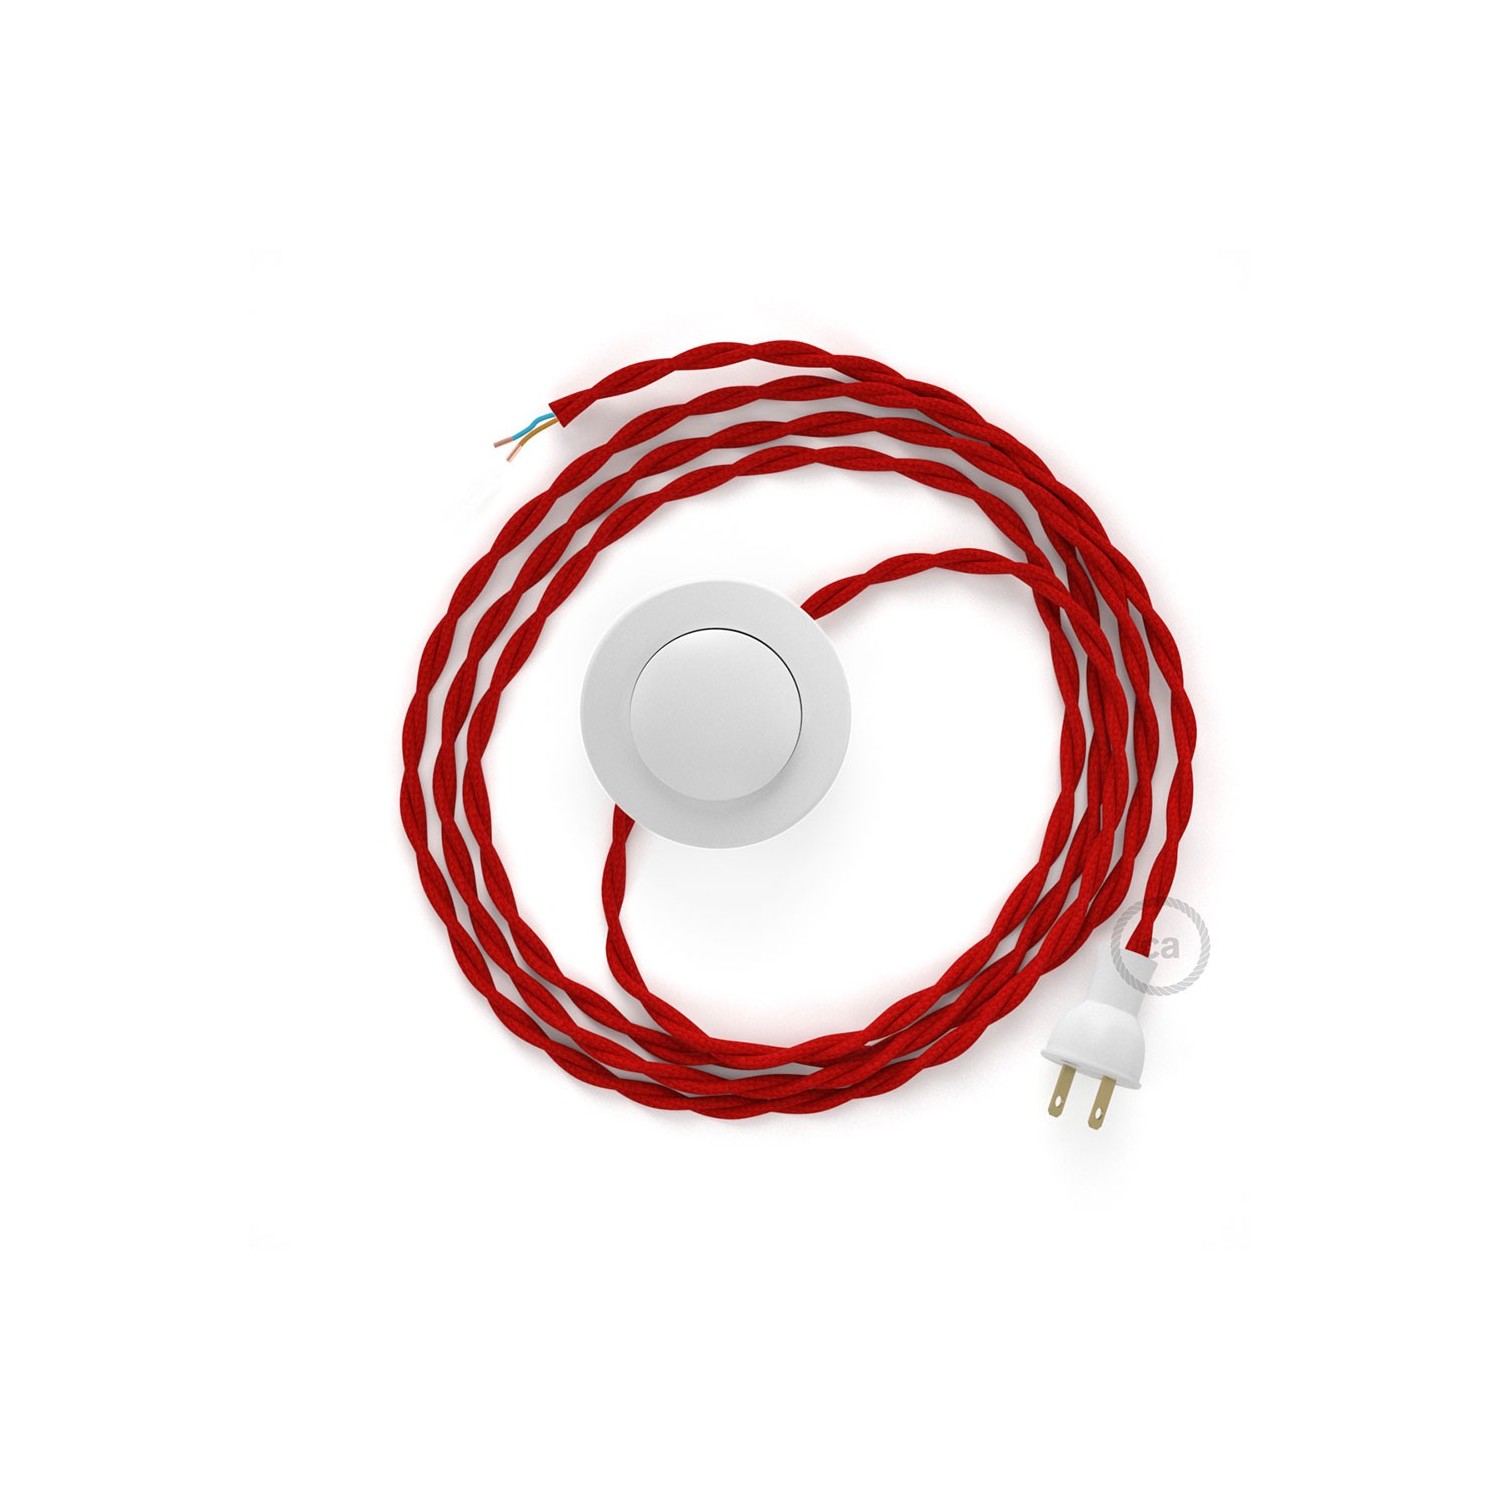 Cableado para lámpara de piso, cable TM09 Rayón Rojo 3 m. Elige tu el color de la clavija y del interruptor!